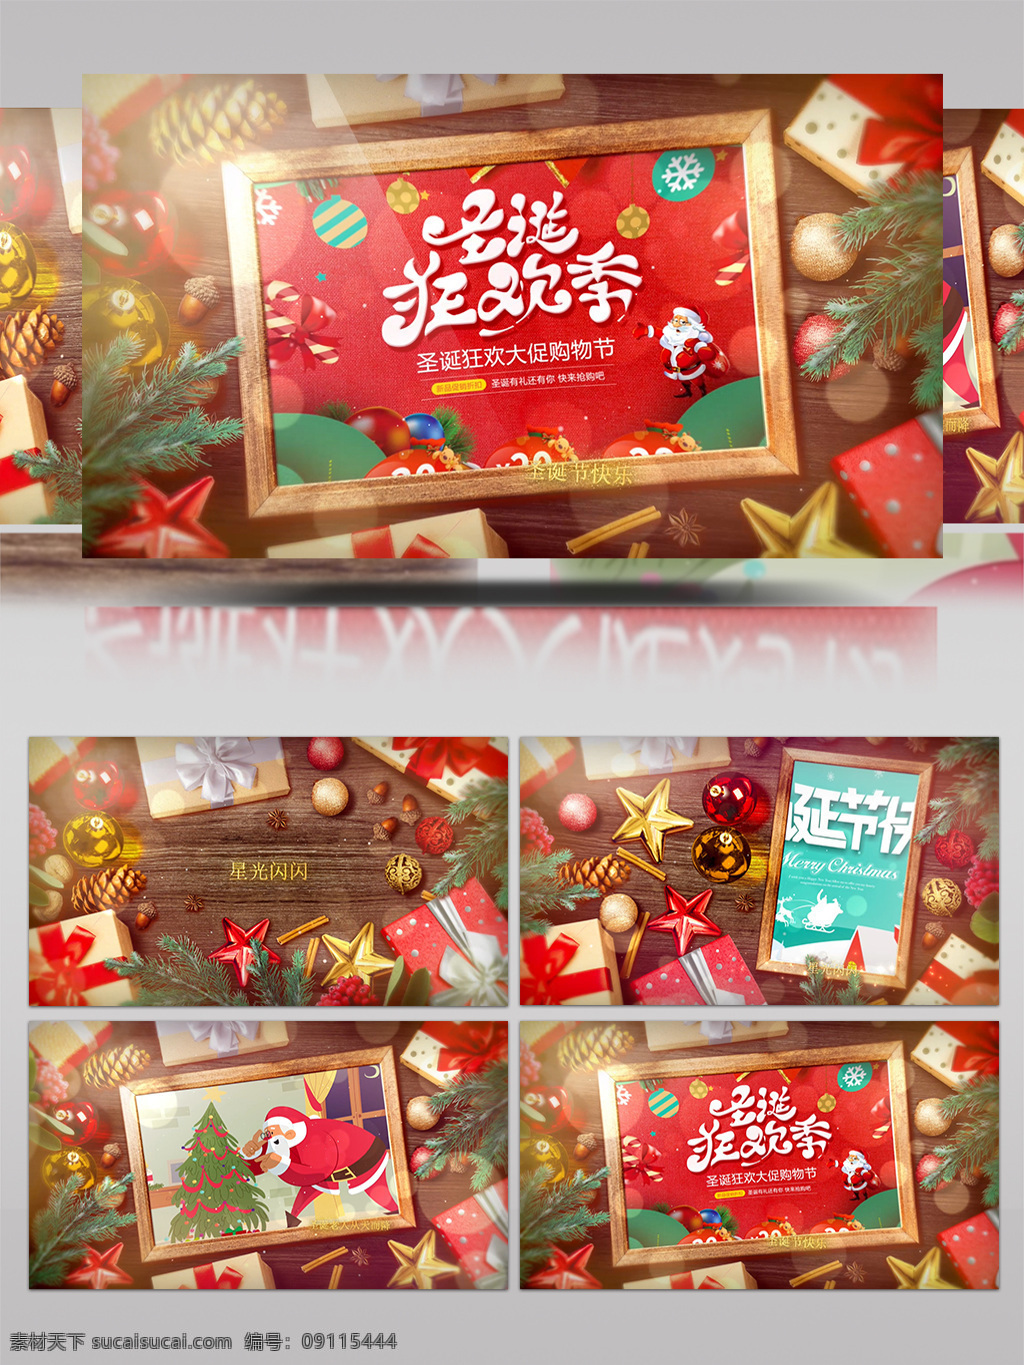 圣诞节 庆祝 照片 展示 纪念 相册 包装 雪景 雪花 片头 片尾 周年 日 冰雪 麋鹿 圣诞老人